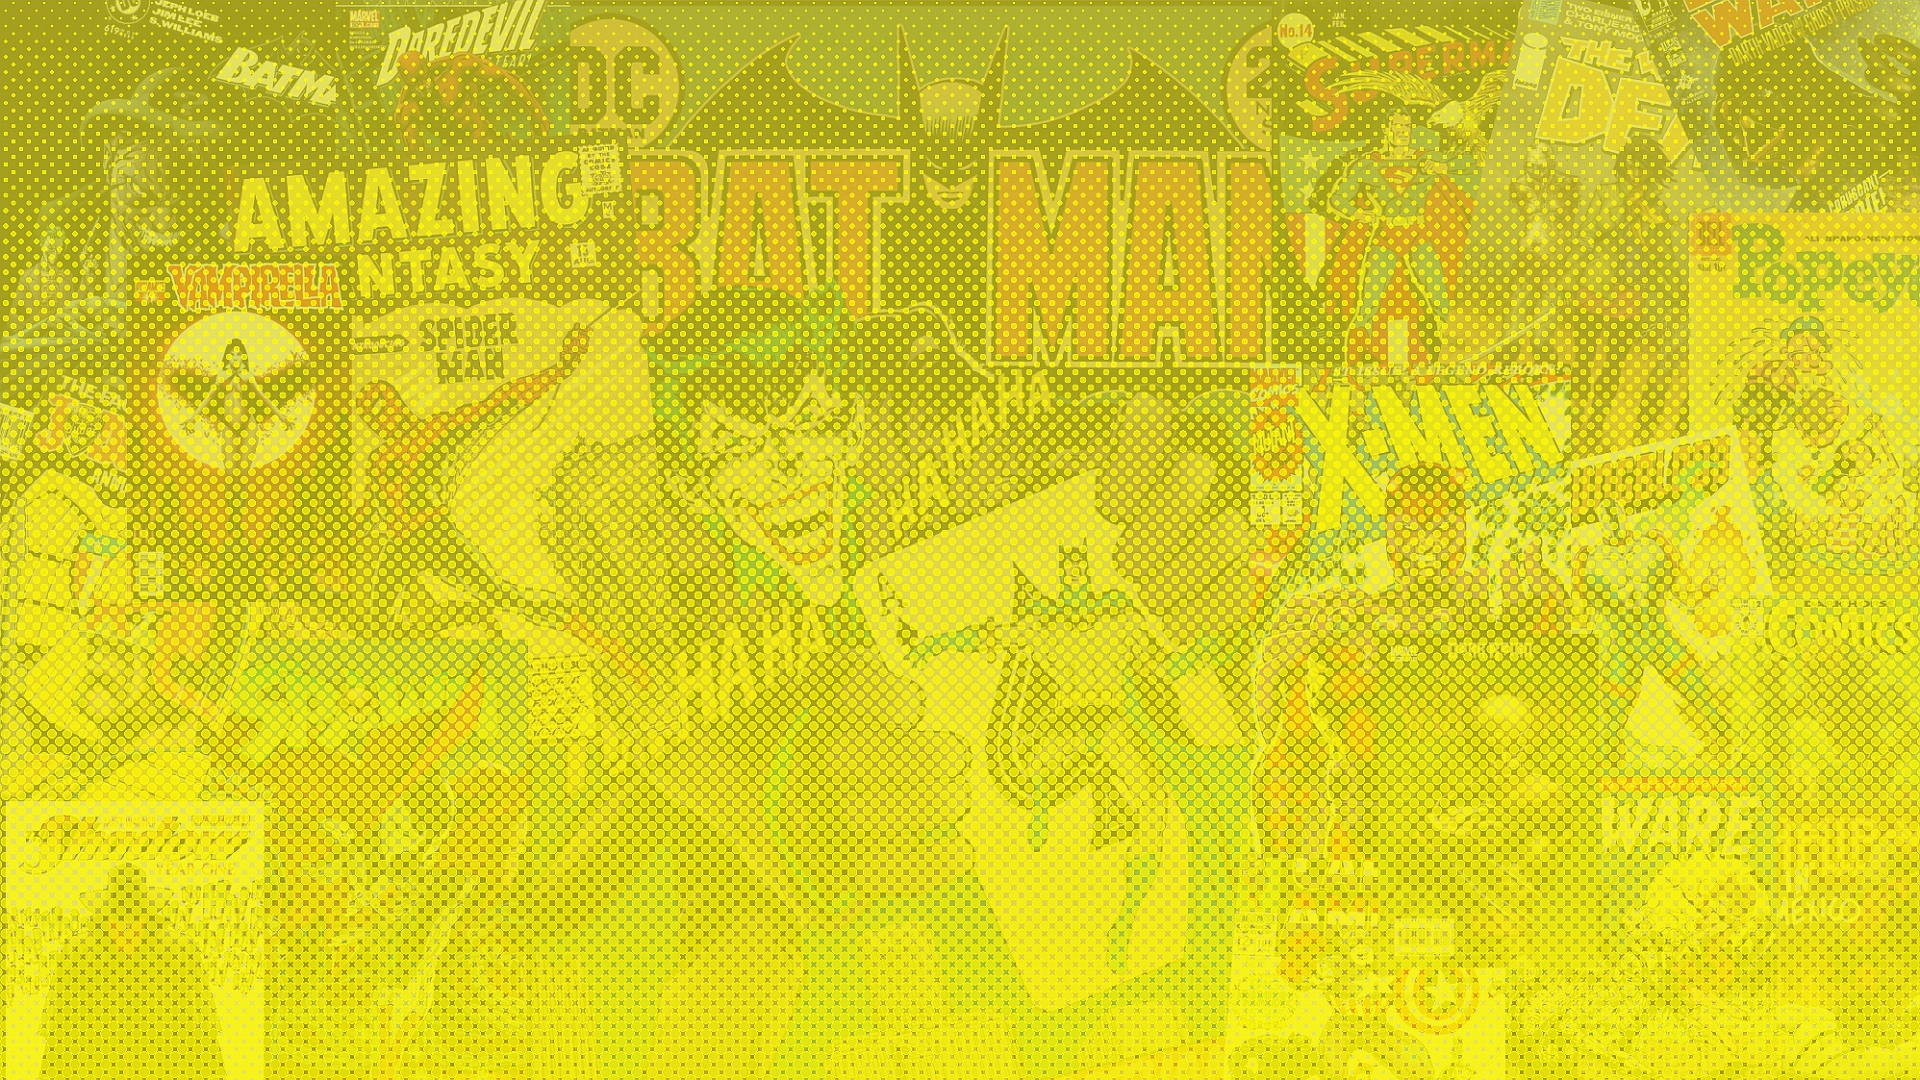 Скачать обои бесплатно Коллаж, Джокер, Комиксы, Бэтмен, Супермен, Магнето (Marvel Comics) картинка на рабочий стол ПК